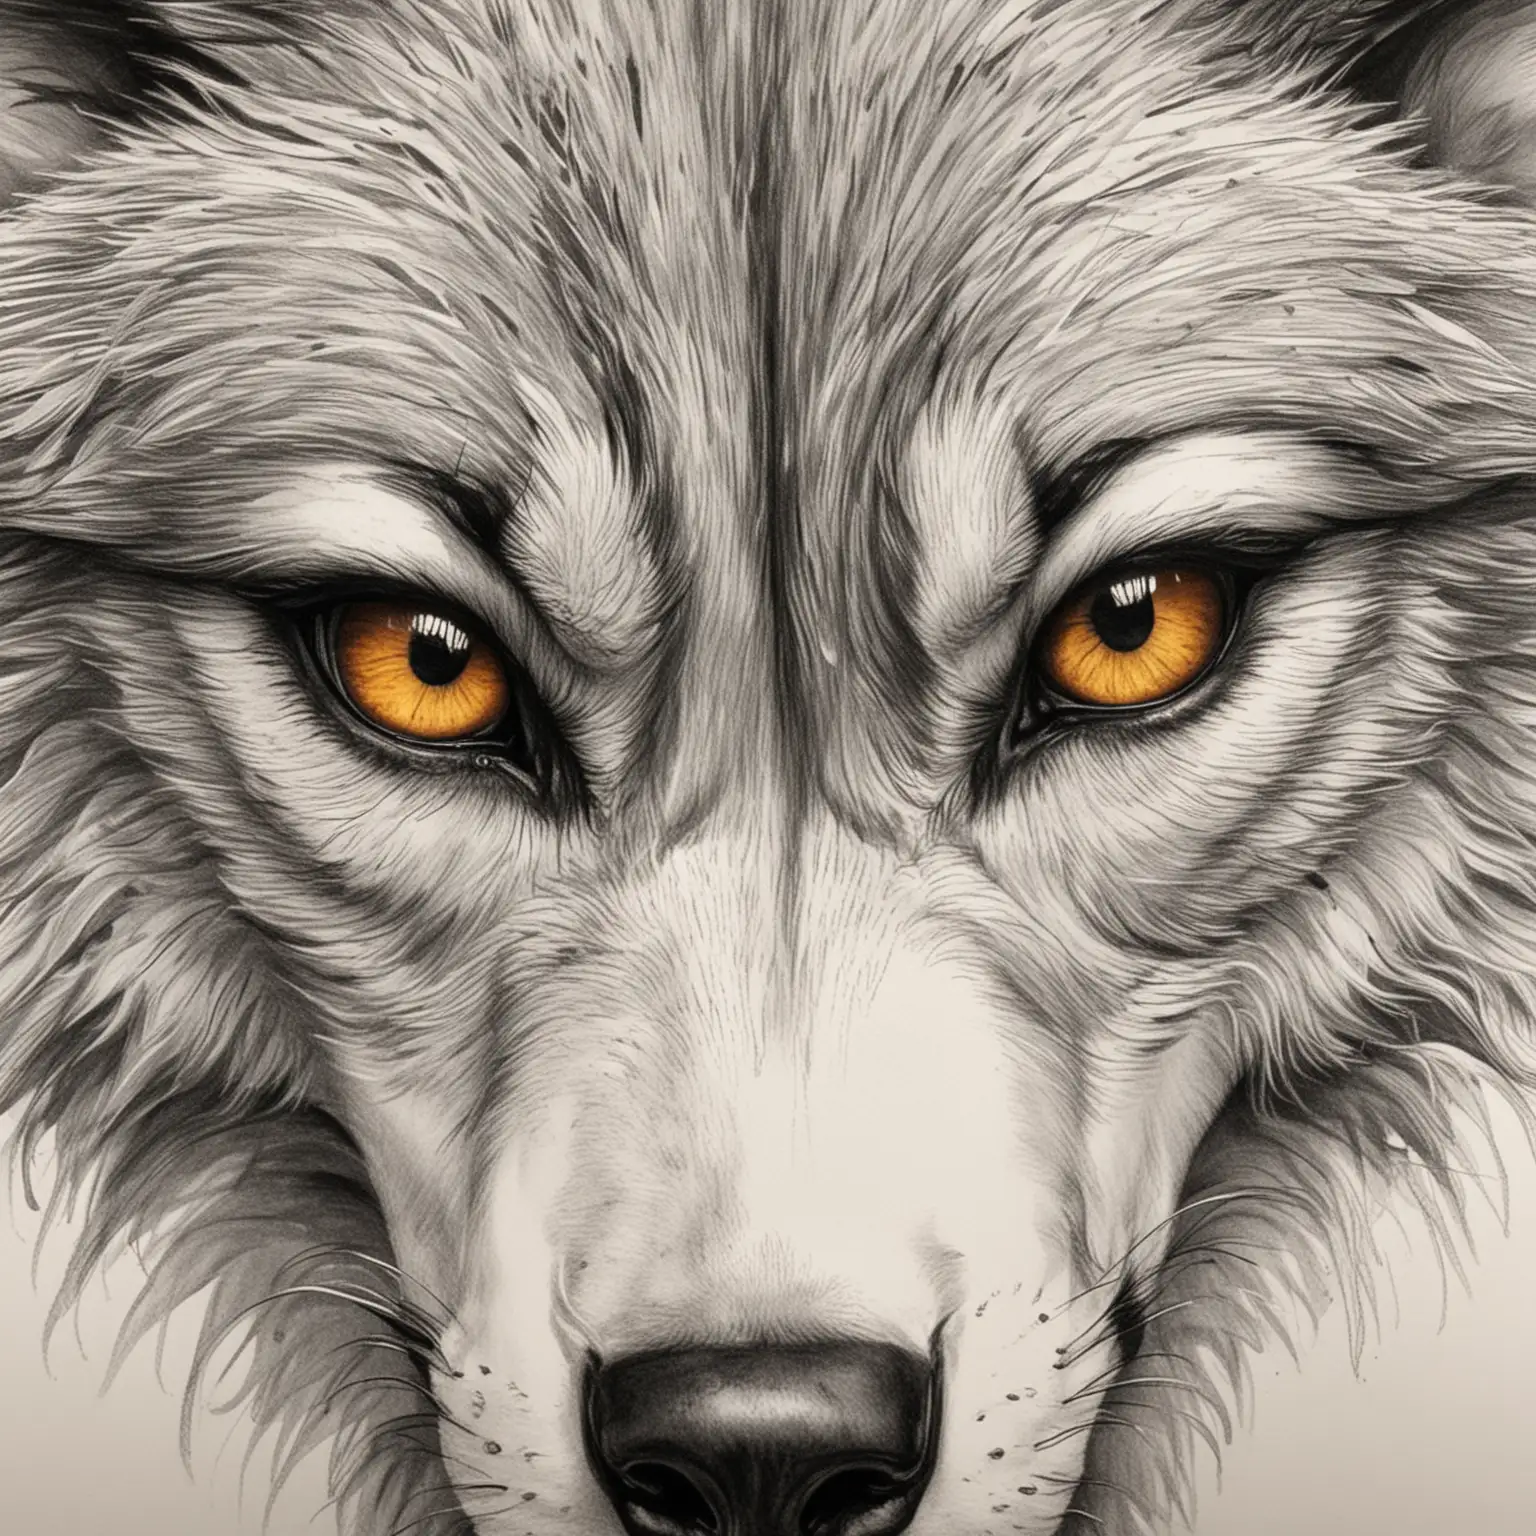 draw a very fierce wolf's eyes